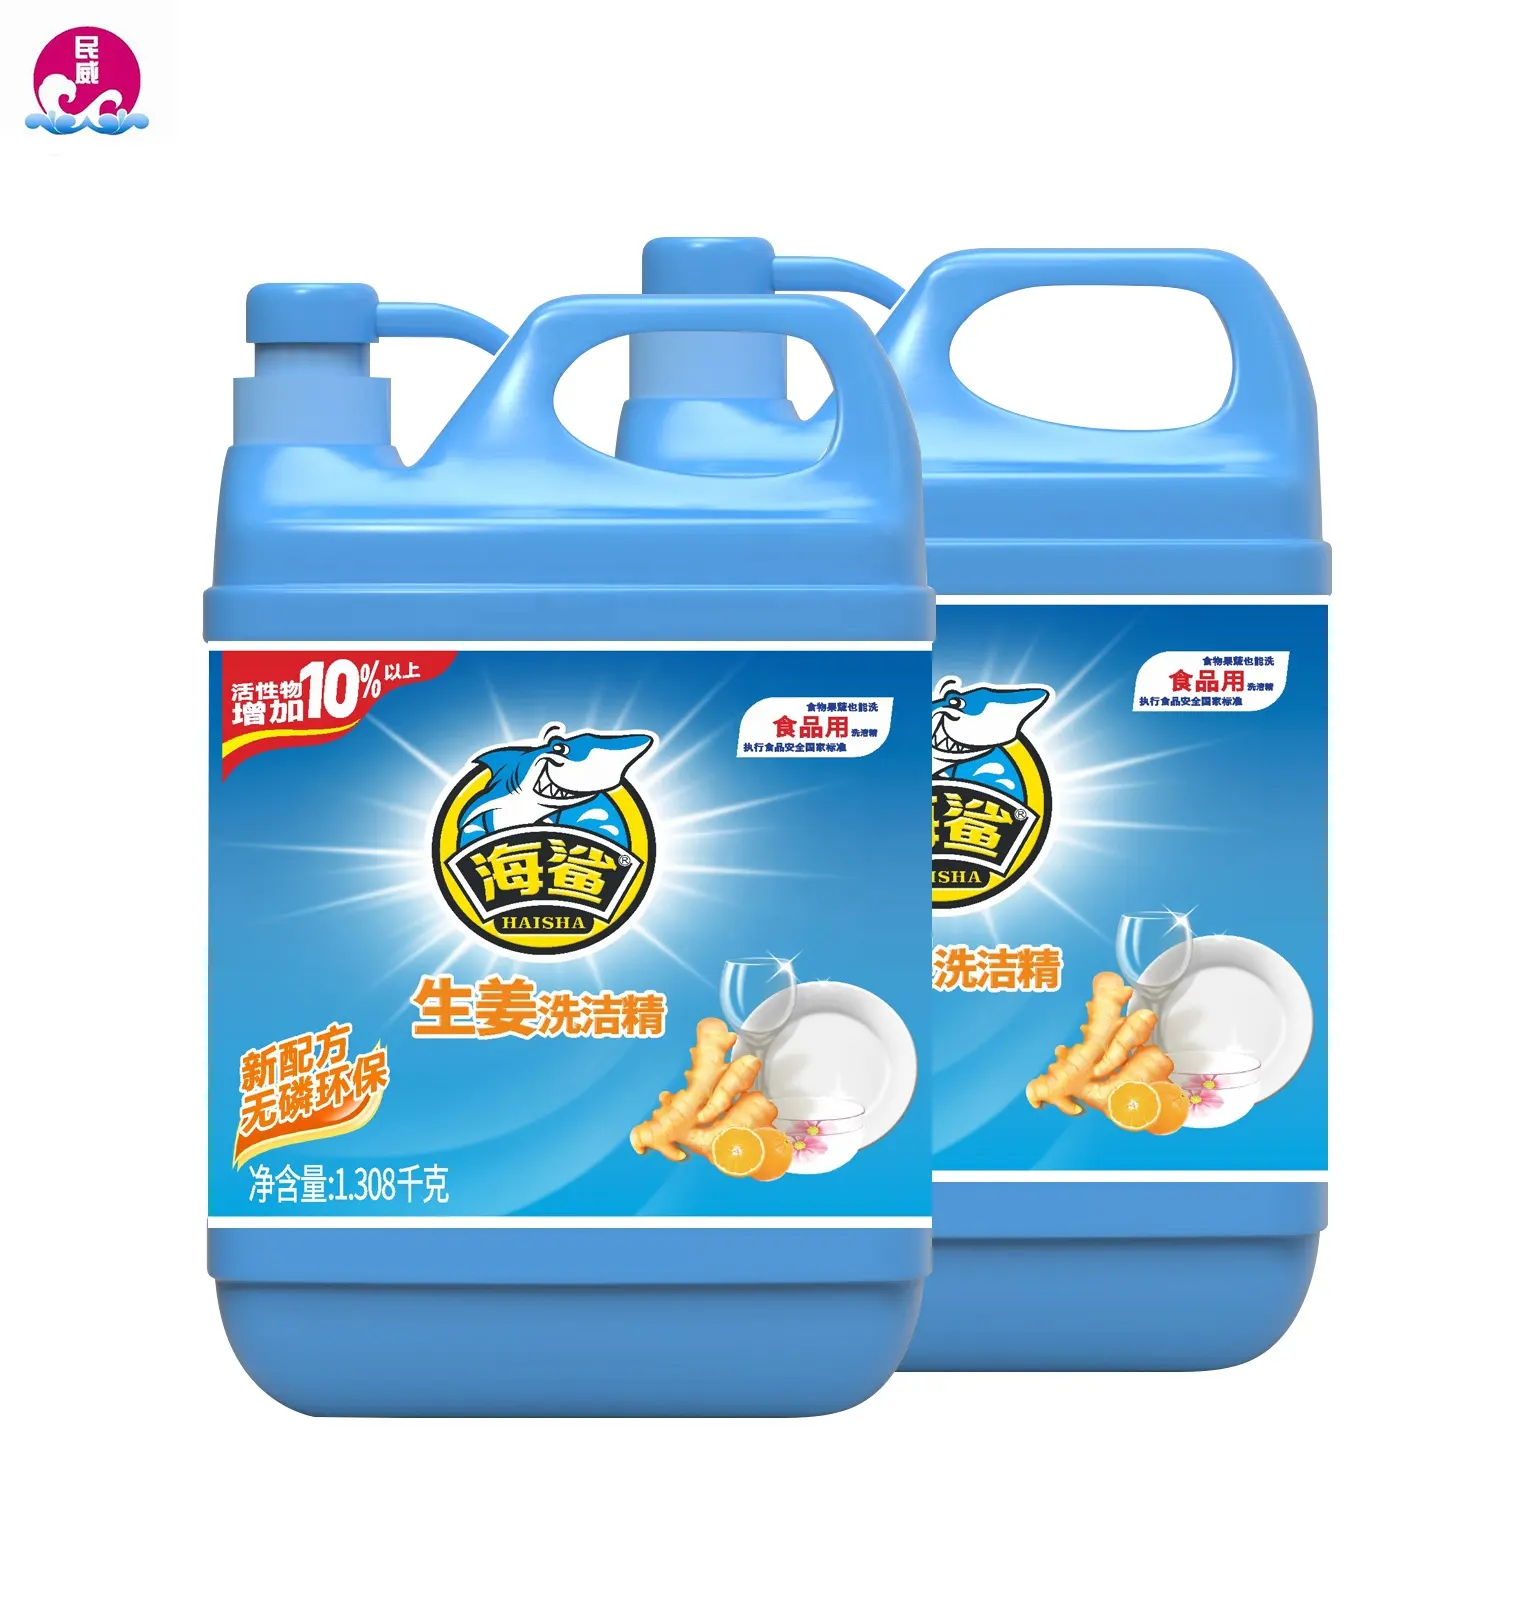 Jengibre respetuoso con el medio ambiente, líquido para lavar platos, aceite, 1.208 kg * 10 botellas, precio barato de fábrica de China